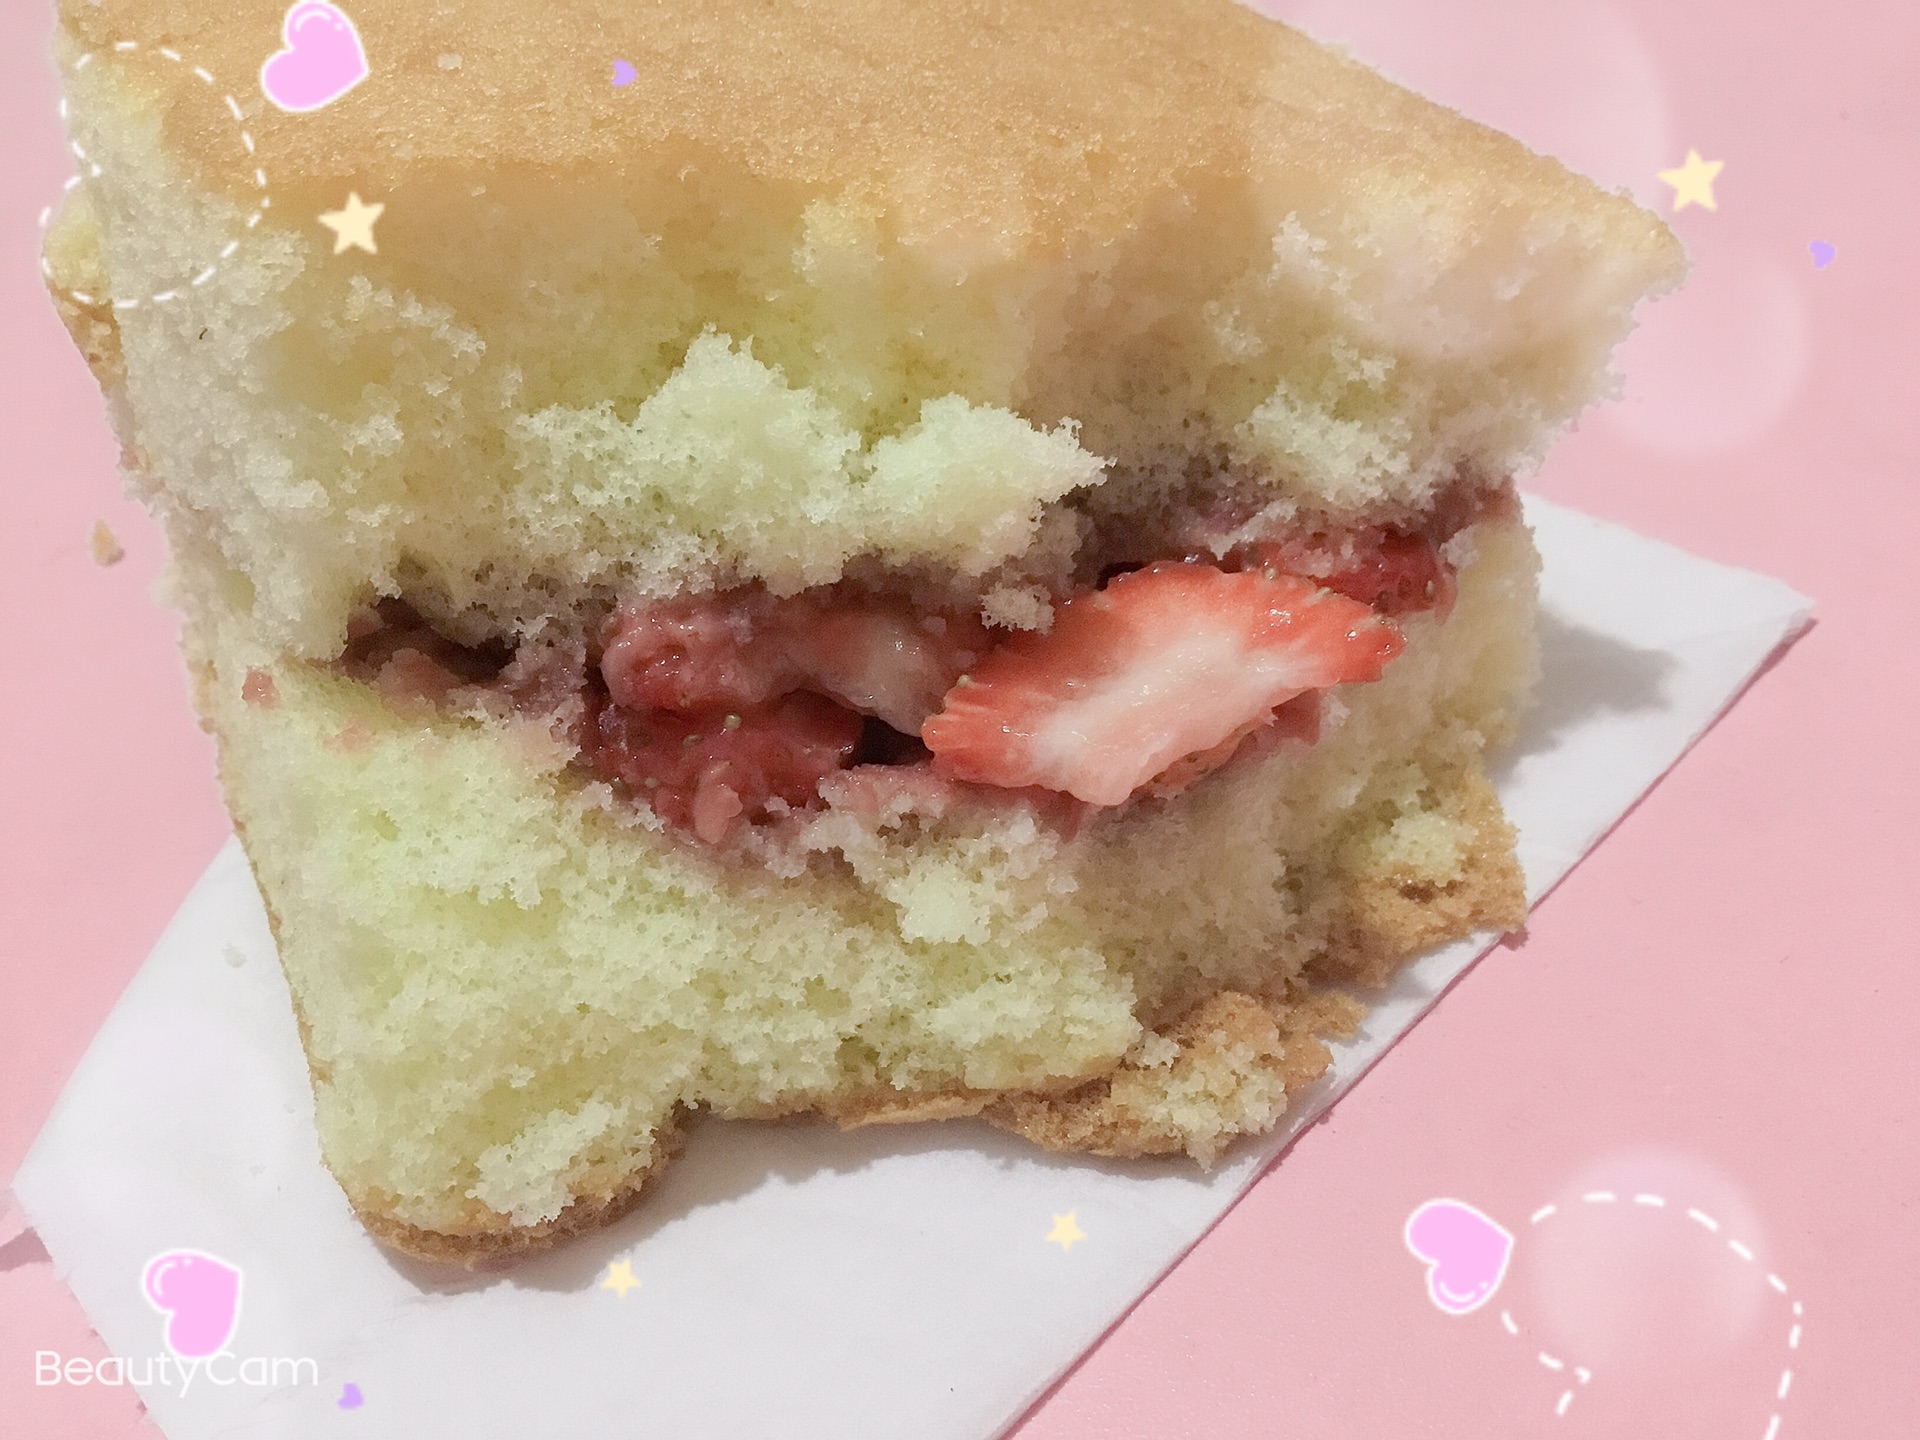 自制草莓蛋糕